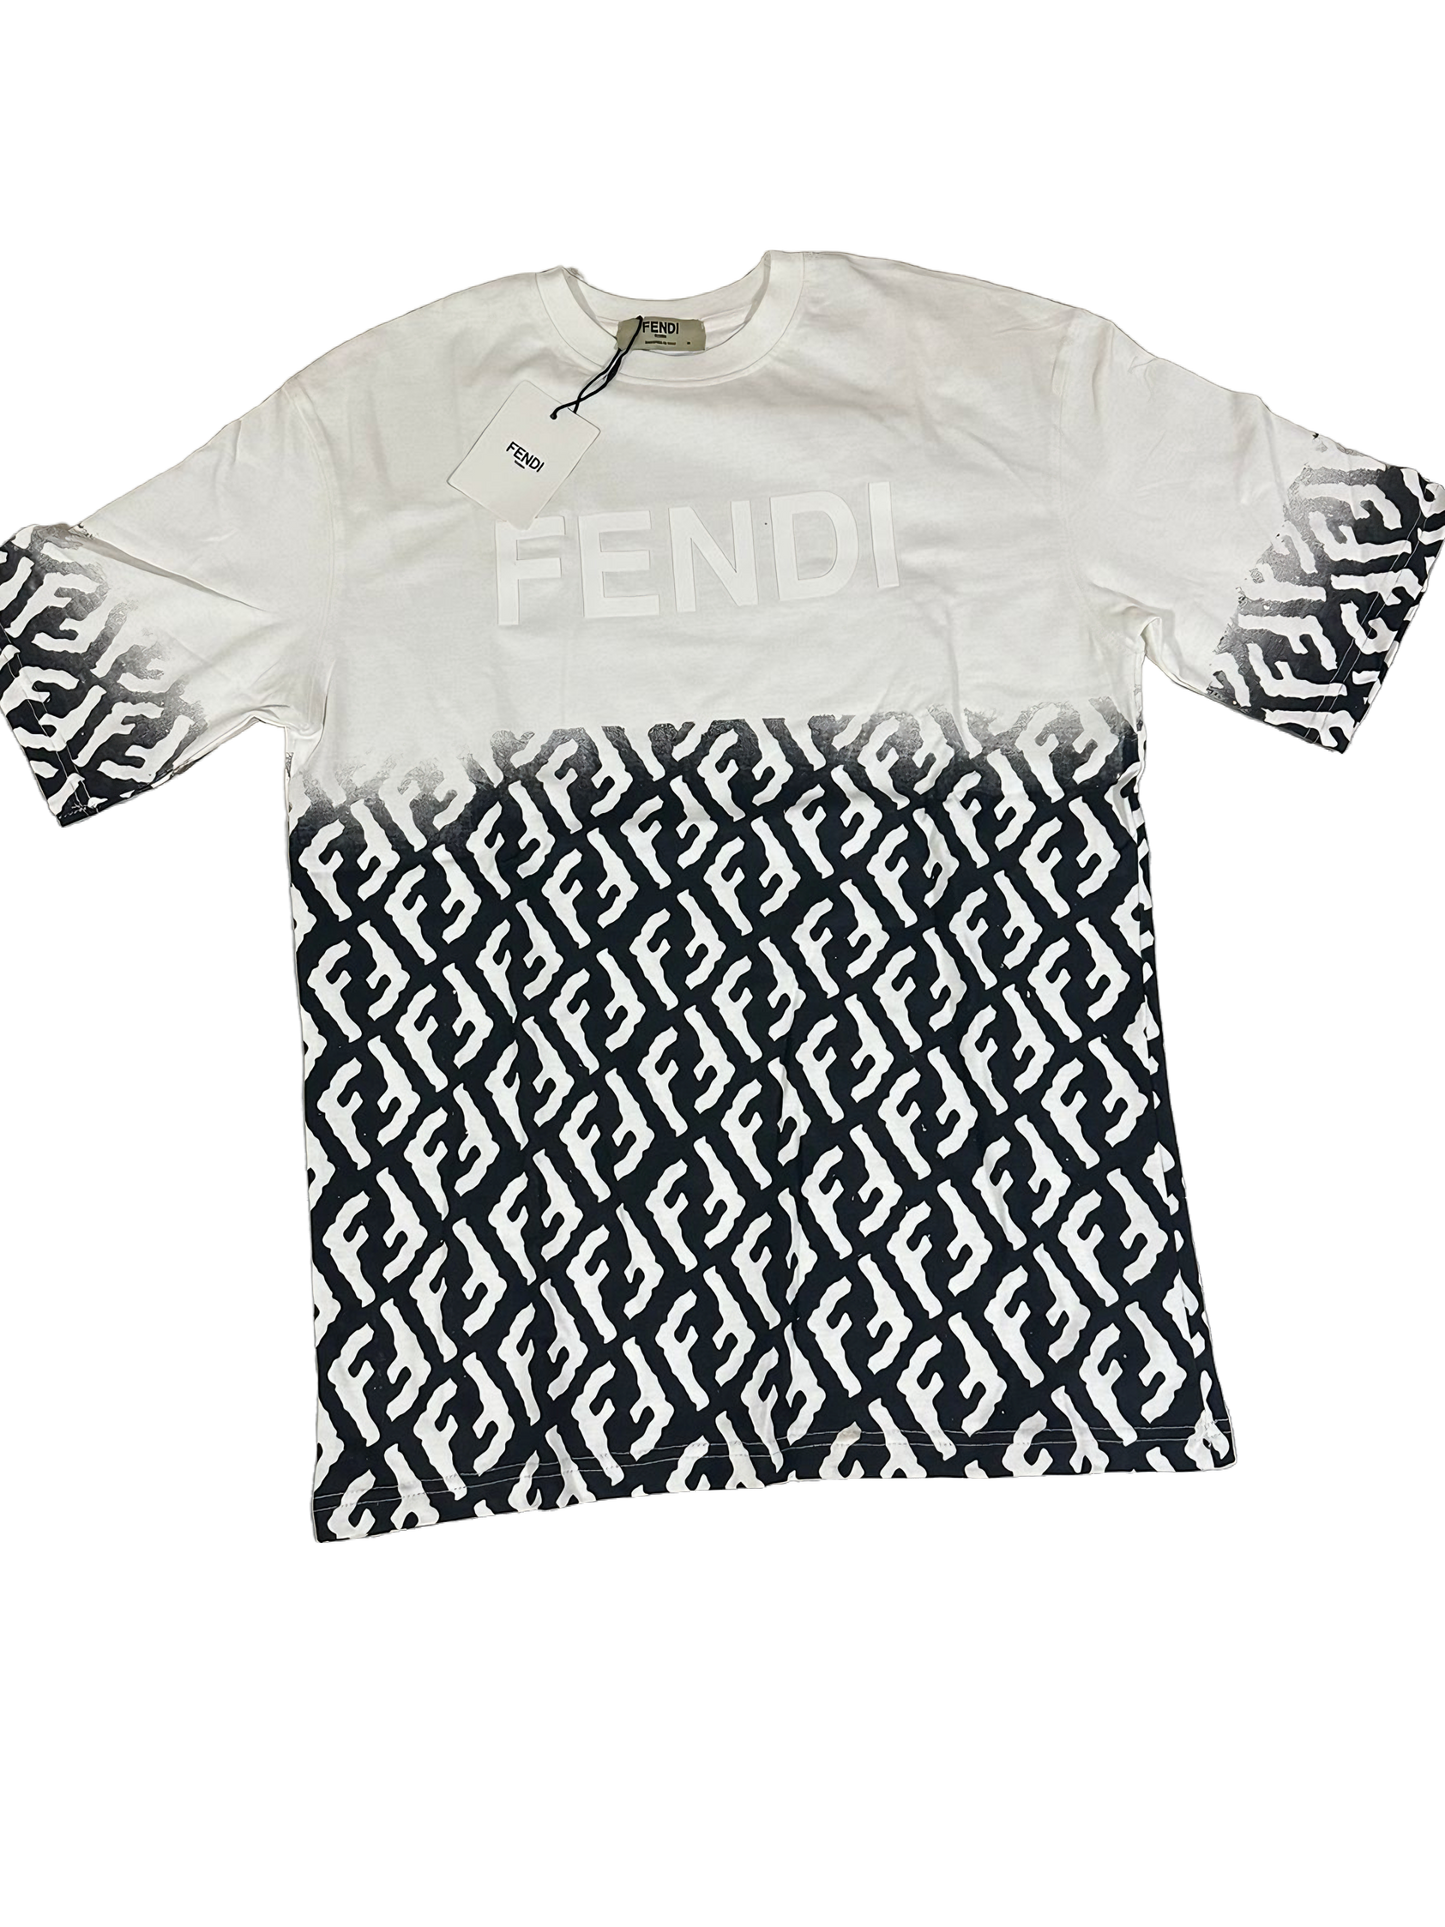 Fendi T-Shirt white